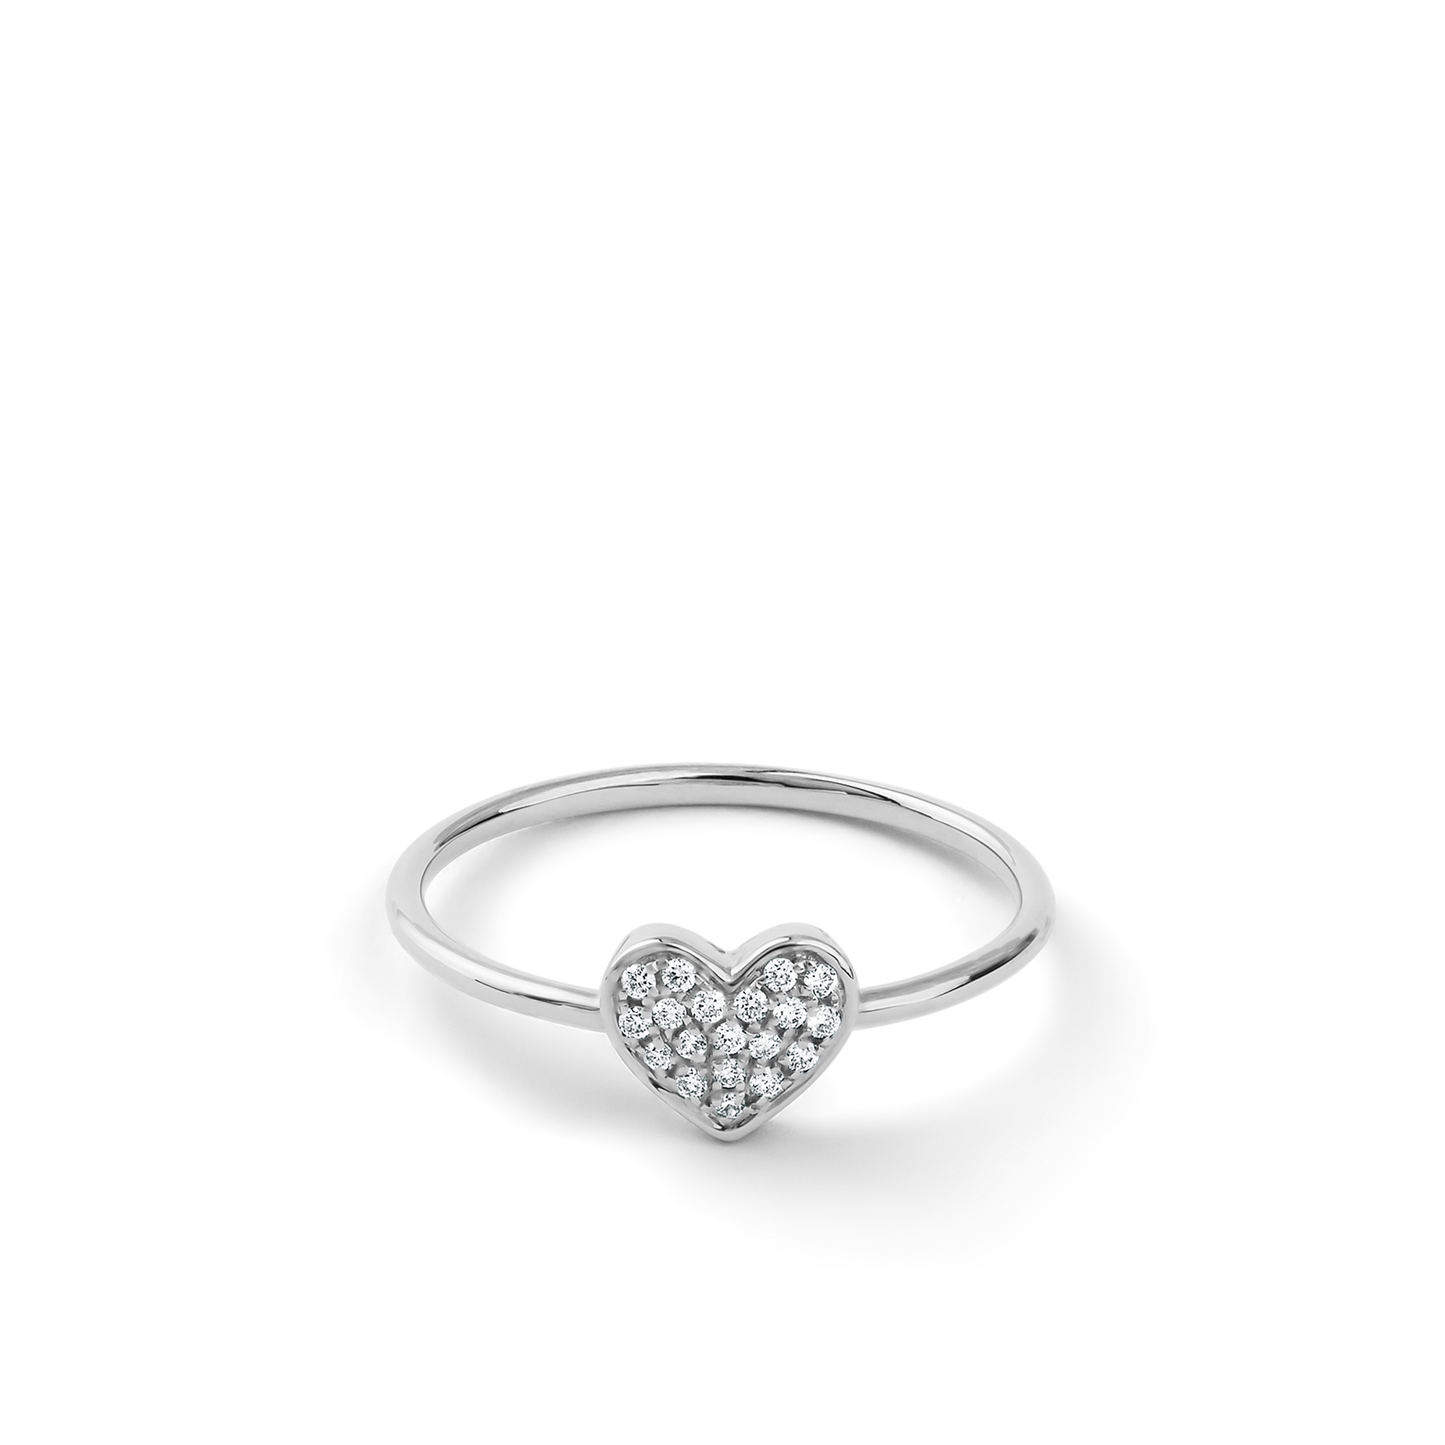 Oliver Heemeyer Emilia Heart diamond ring 18k white gold.